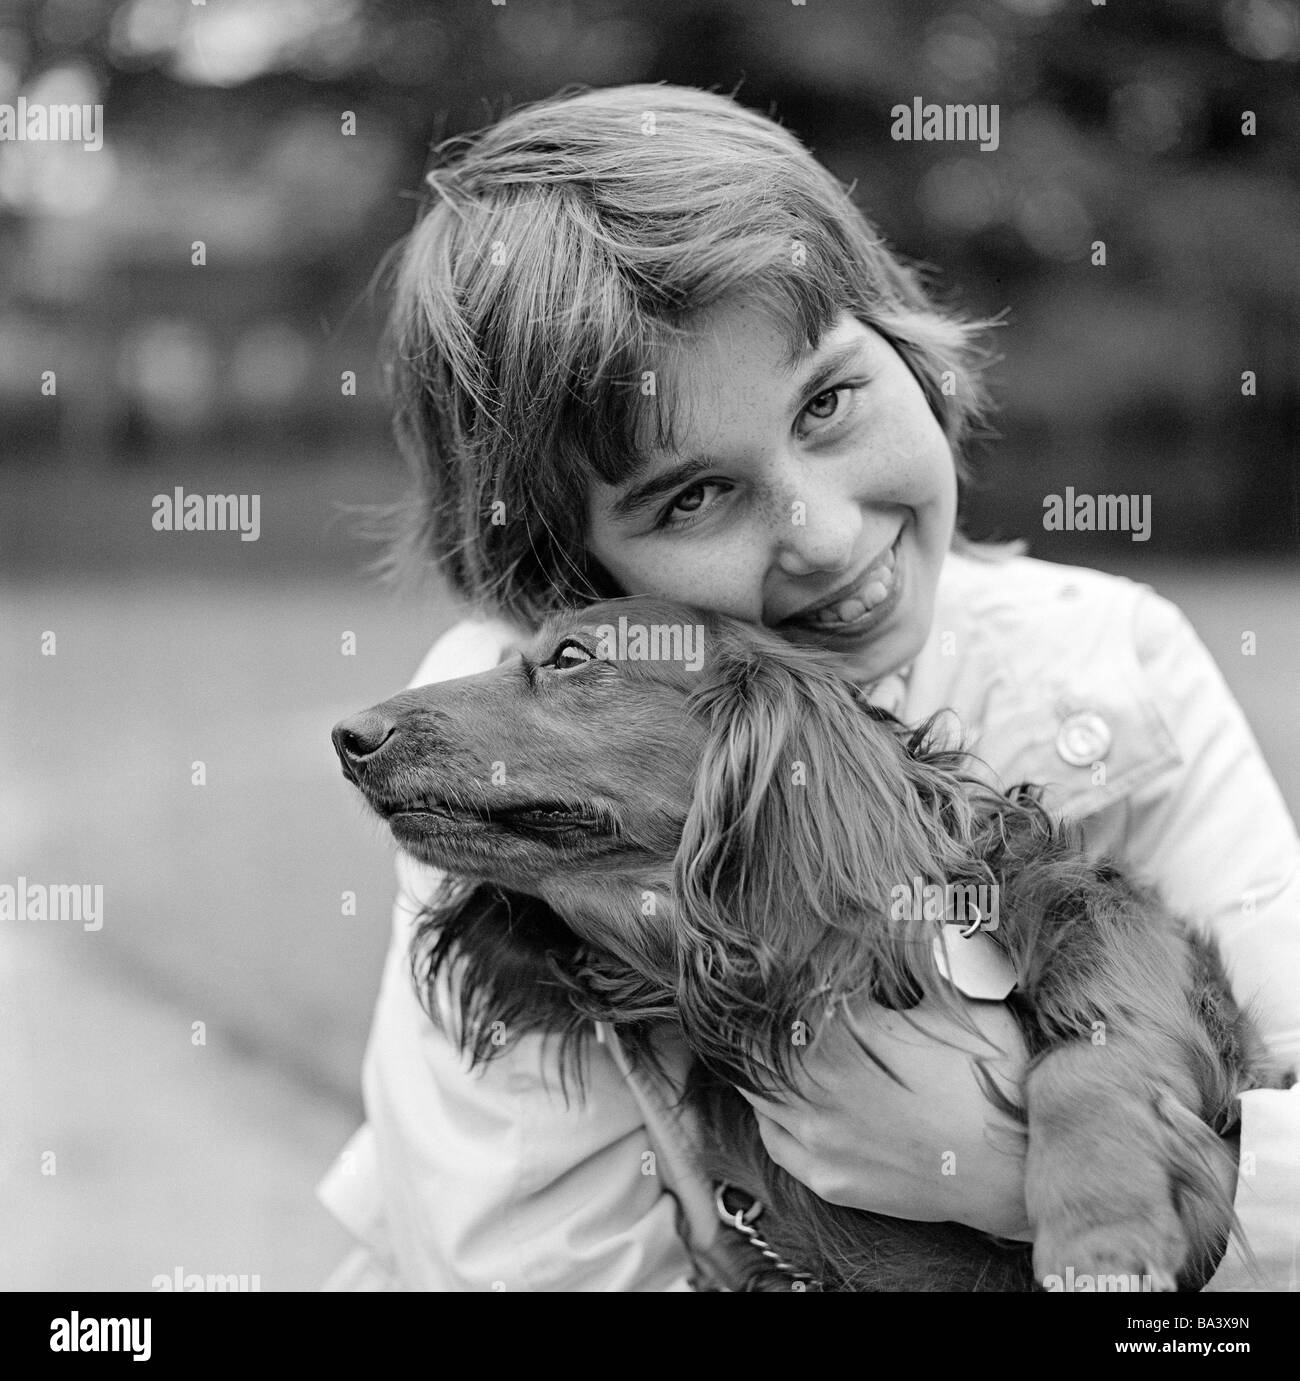 Negli anni settanta, foto in bianco e nero, umana e animale, giovane ragazza di coccole con un bassotto, di età compresa tra i 10 e i 14 anni, cane domestico, Canis lupus familiaris Foto Stock